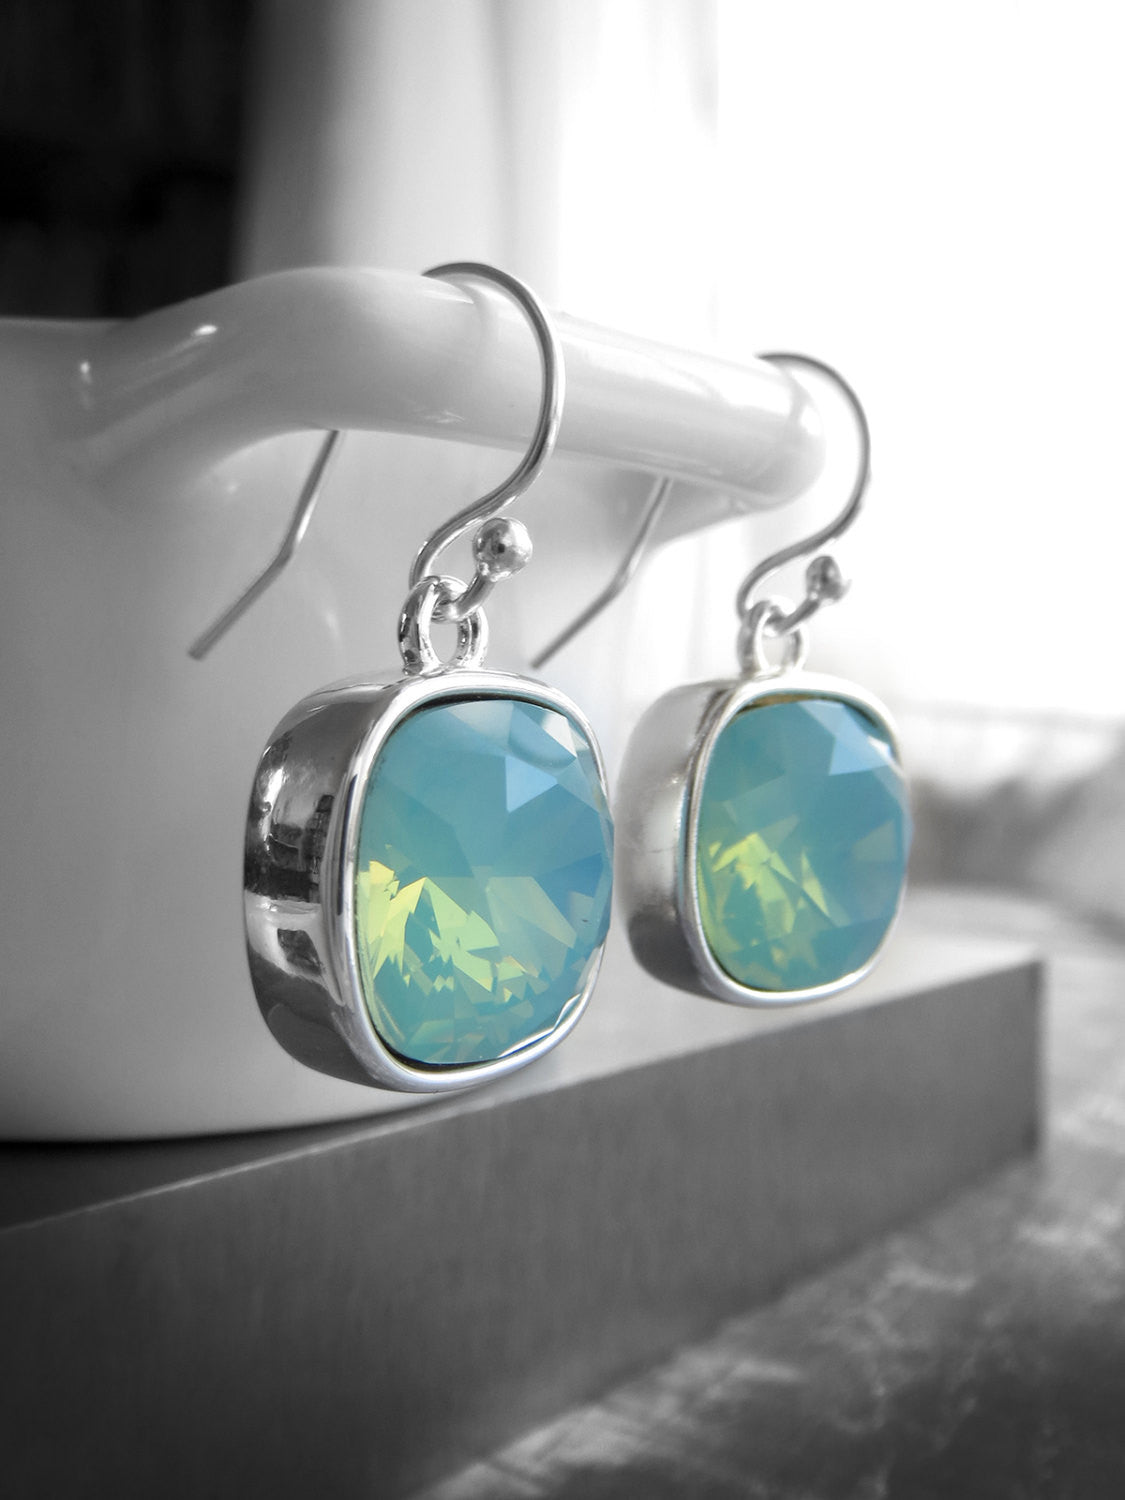 Seafoam Ghost - Mint Seafoam Crystal Earrings